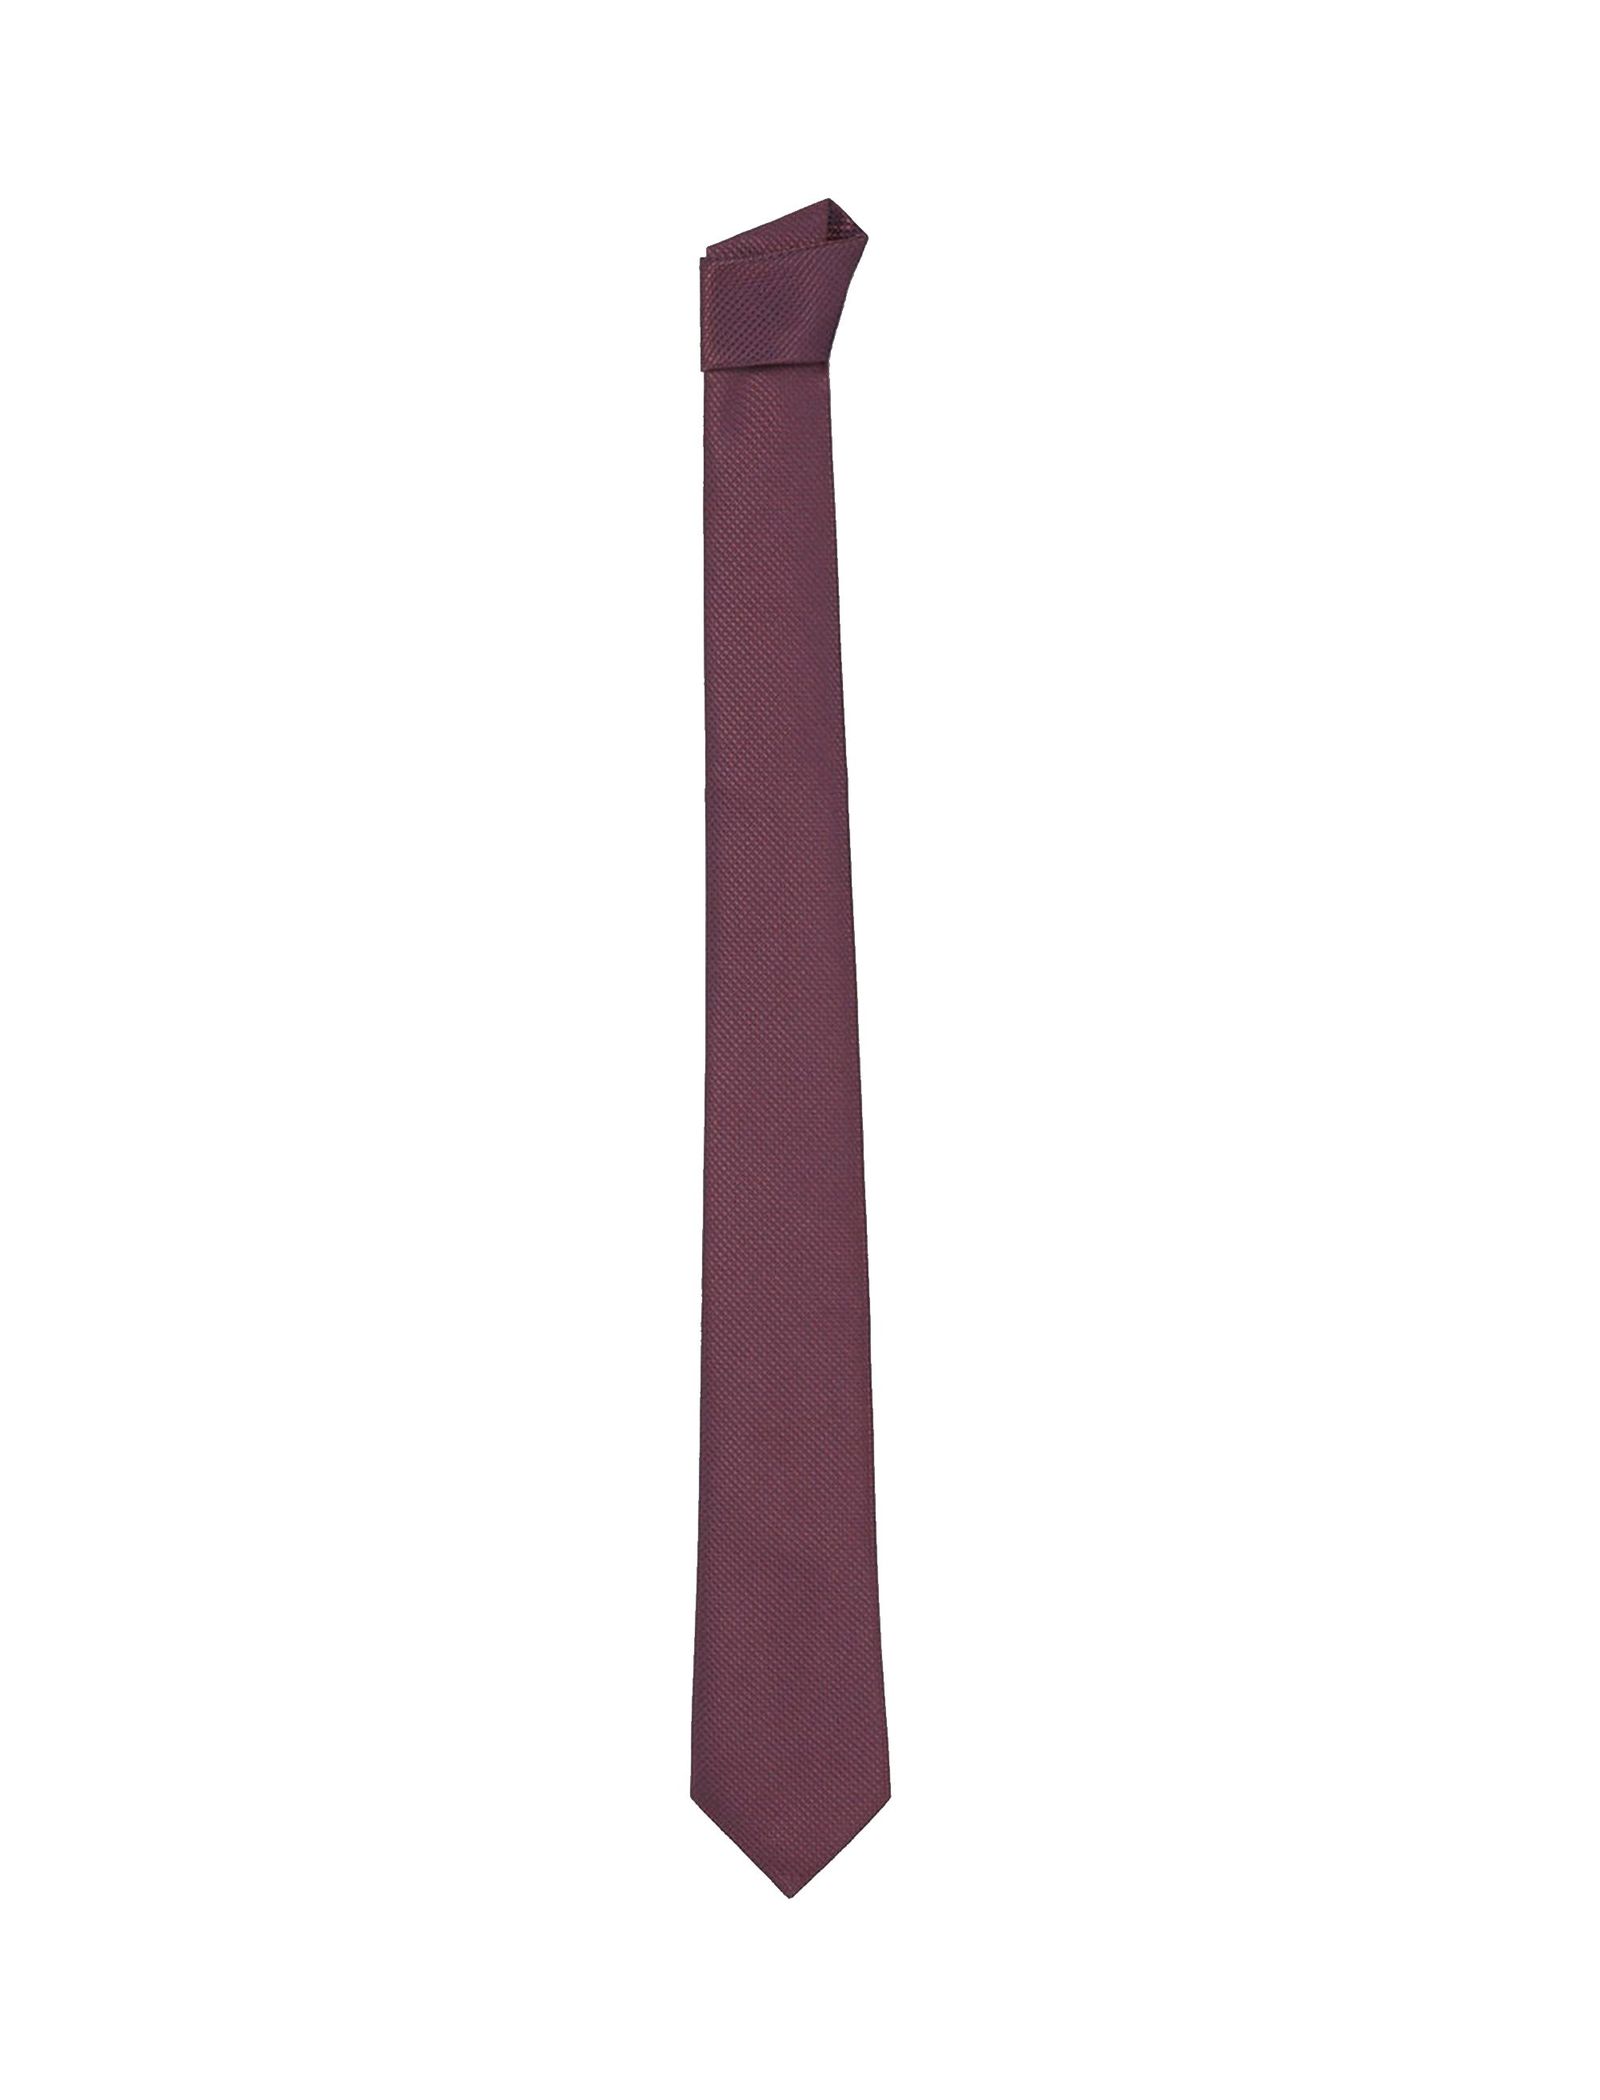 کراوات طرح دار مردانه - مانگو - قرمز - 1